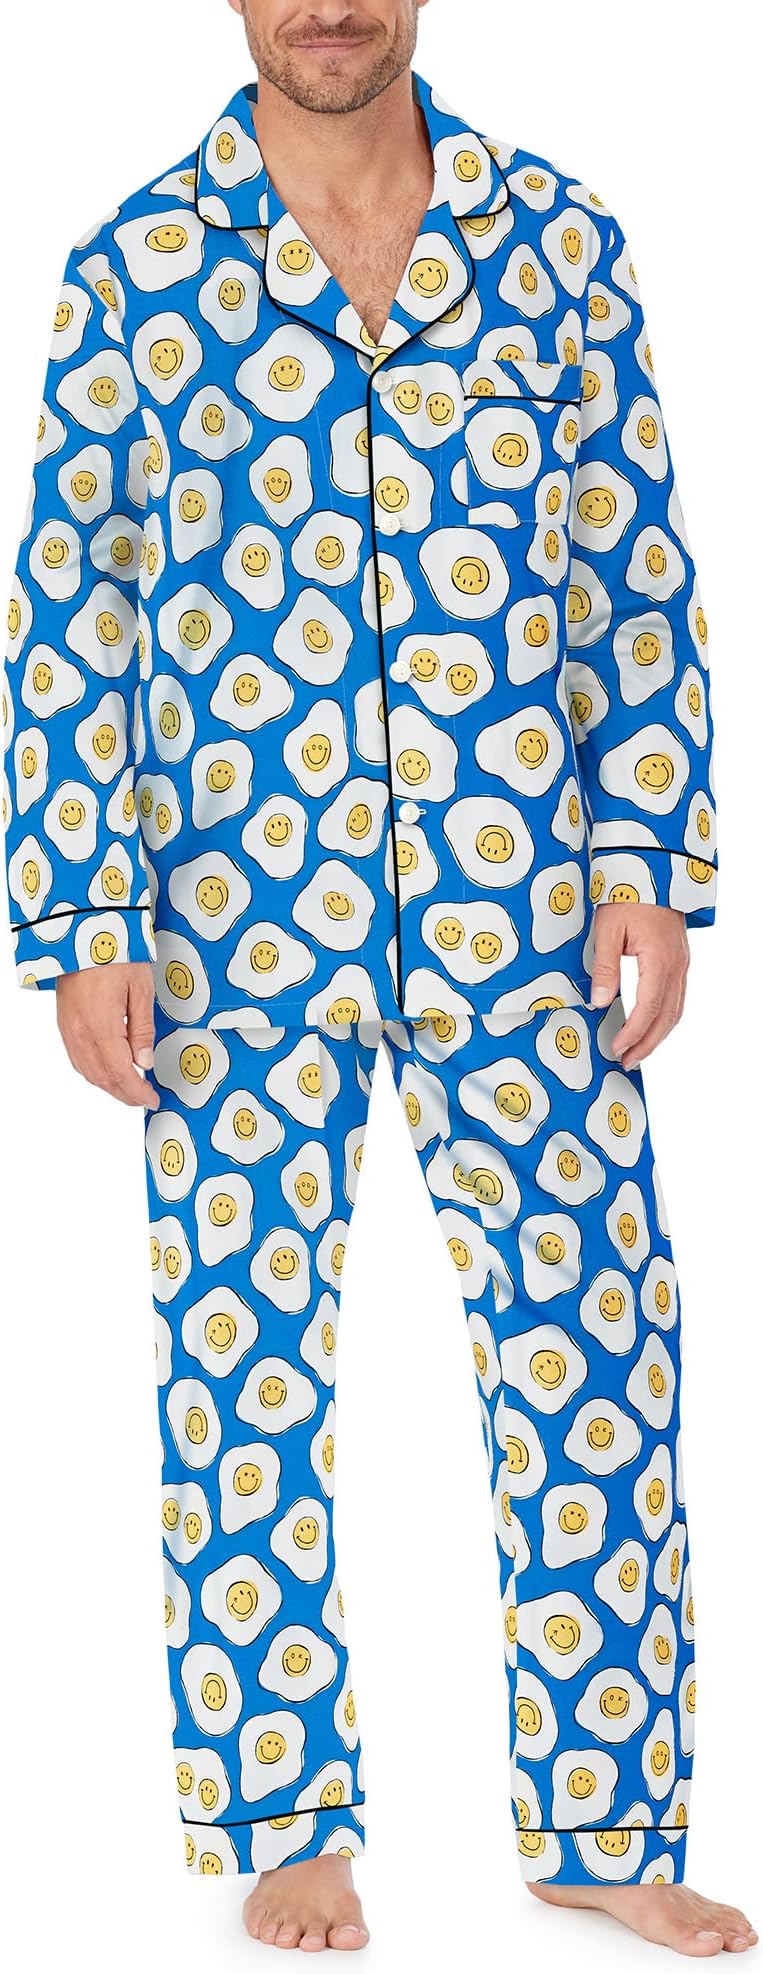 Zappos Print Lab: классический пижамный комплект с длинными рукавами Sunny Side Up Bedhead PJs, цвет Sunny Side Up sunny side up